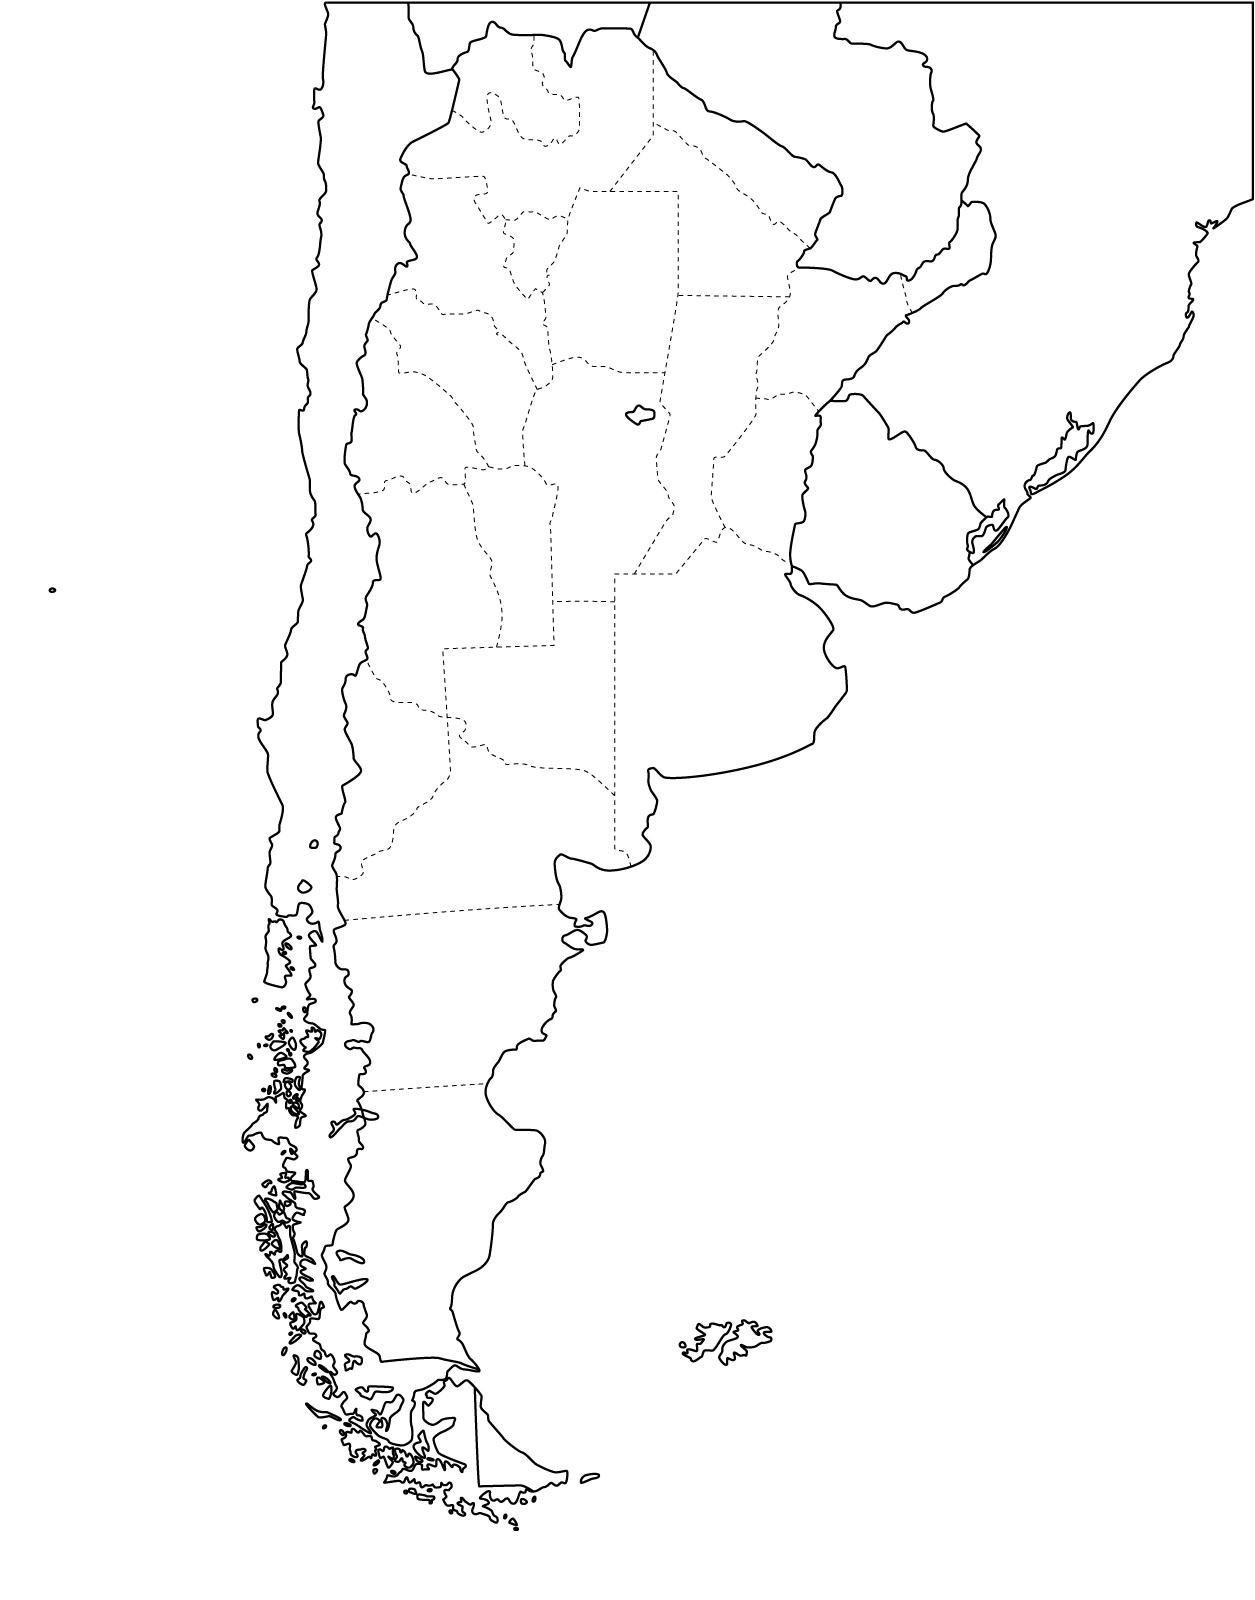 Mapa de Chile y Argentina